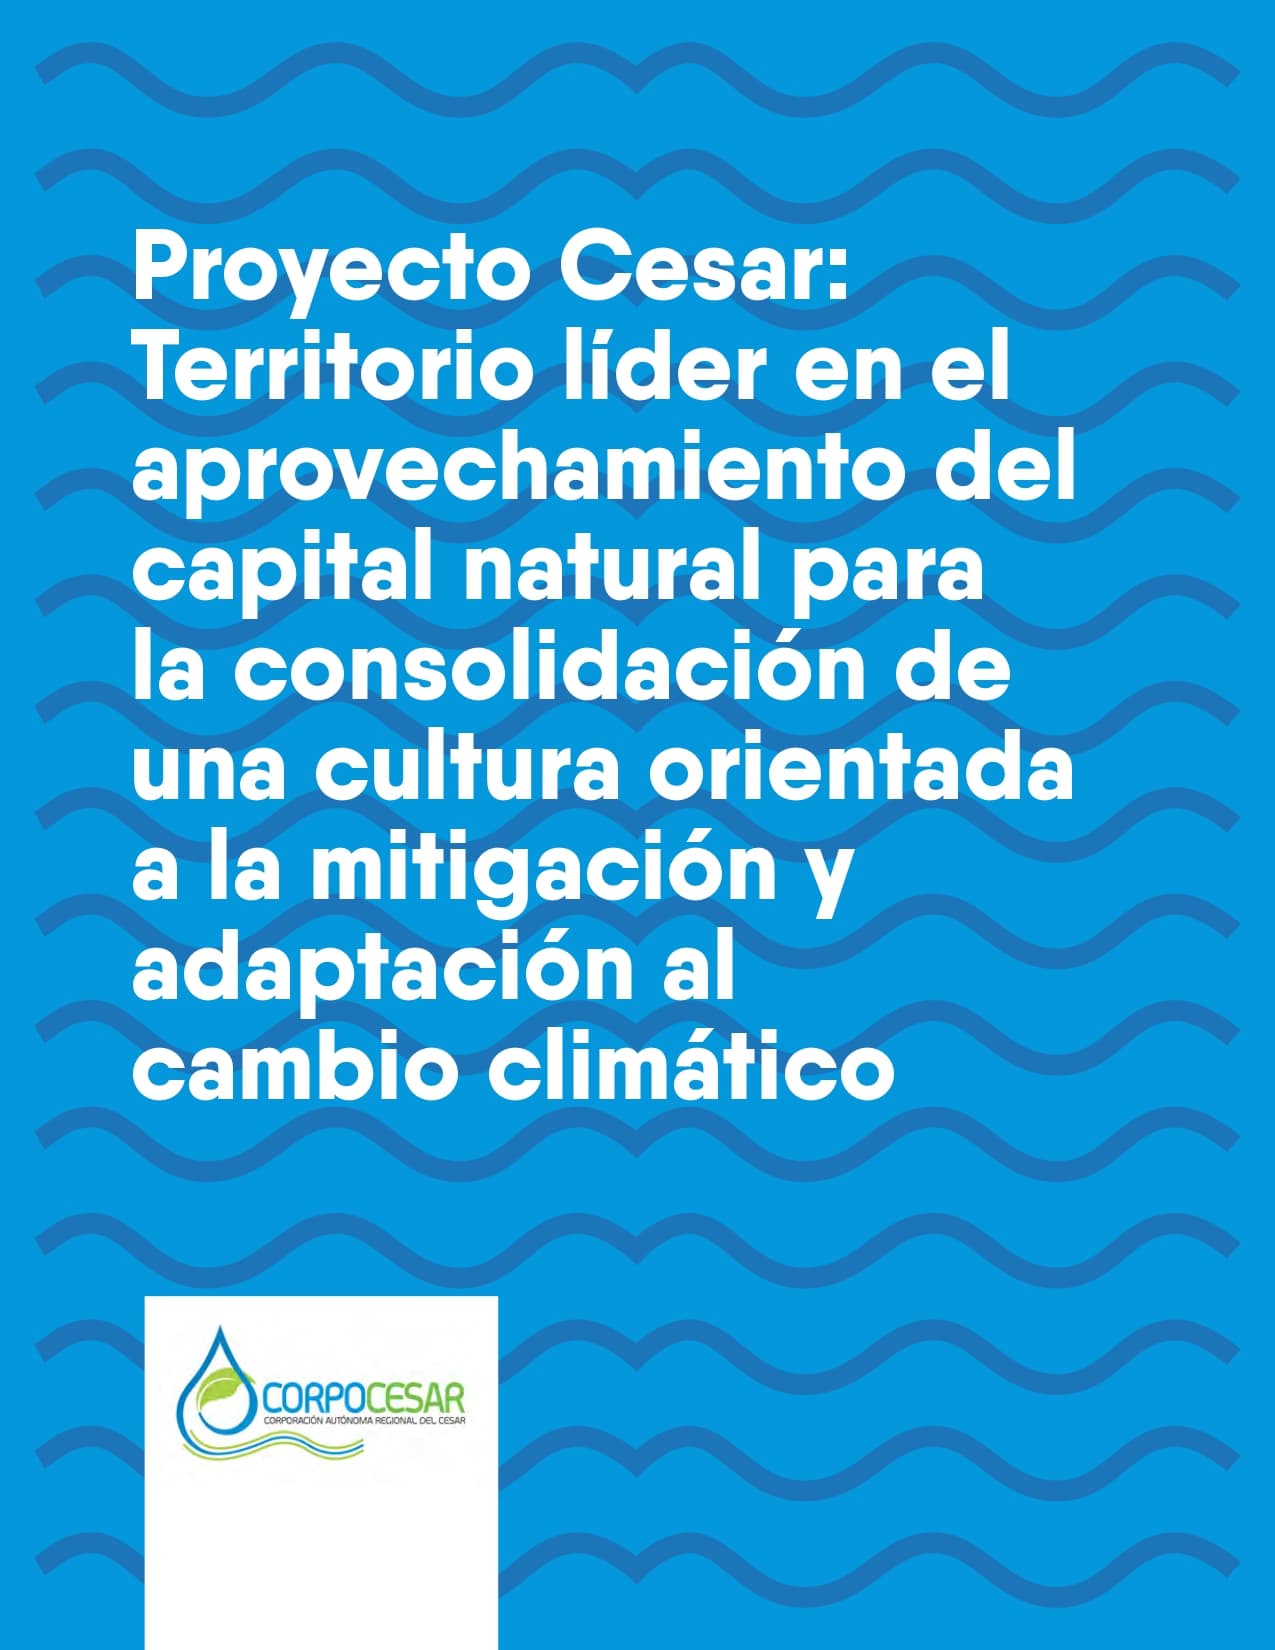 Proyecto Cesar: territorio líder en el aprovechamiento del capital natural para la consolidación de una cultura orientada a la mitigación y adaptación al cambio climático